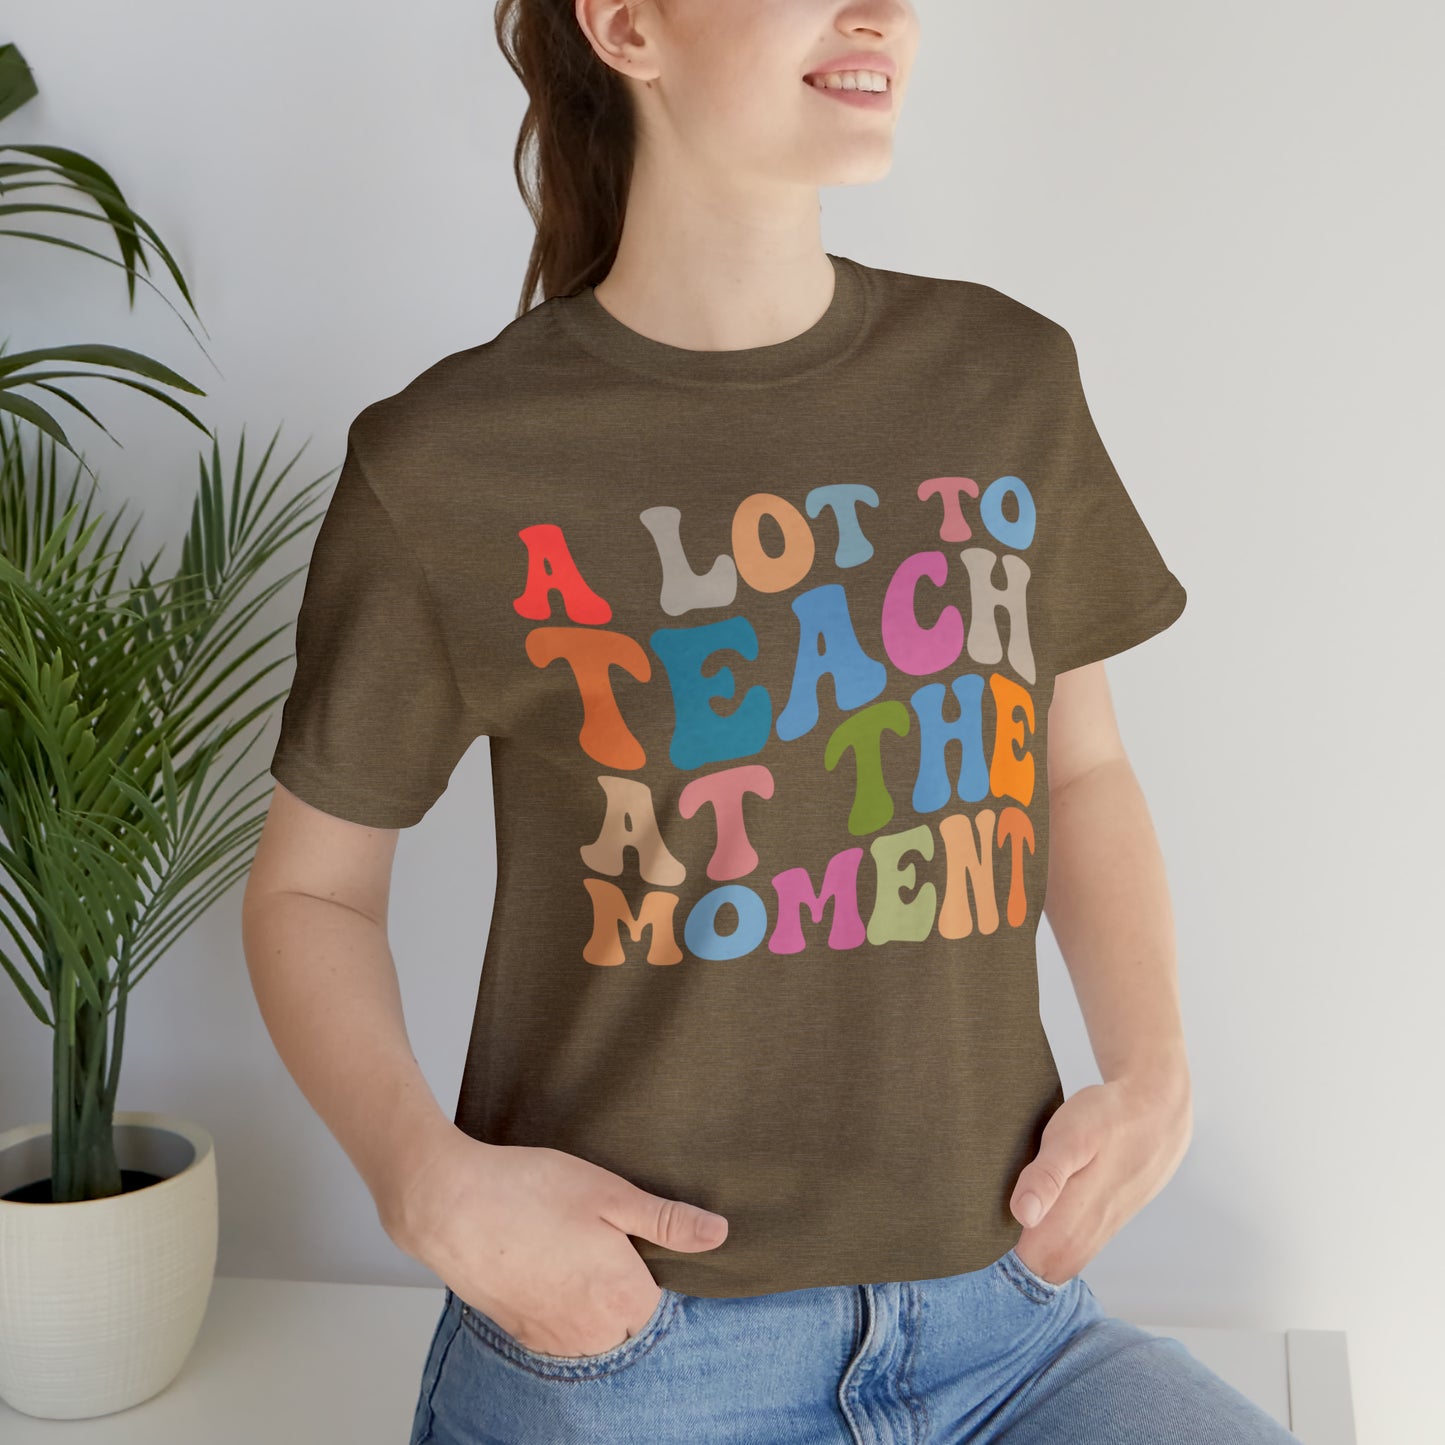 Motivational Shirt, A Lot To Teach At The Moment Shirt, Teacher Shirt, Teacher Appreciation, Back To School Shirt, T499